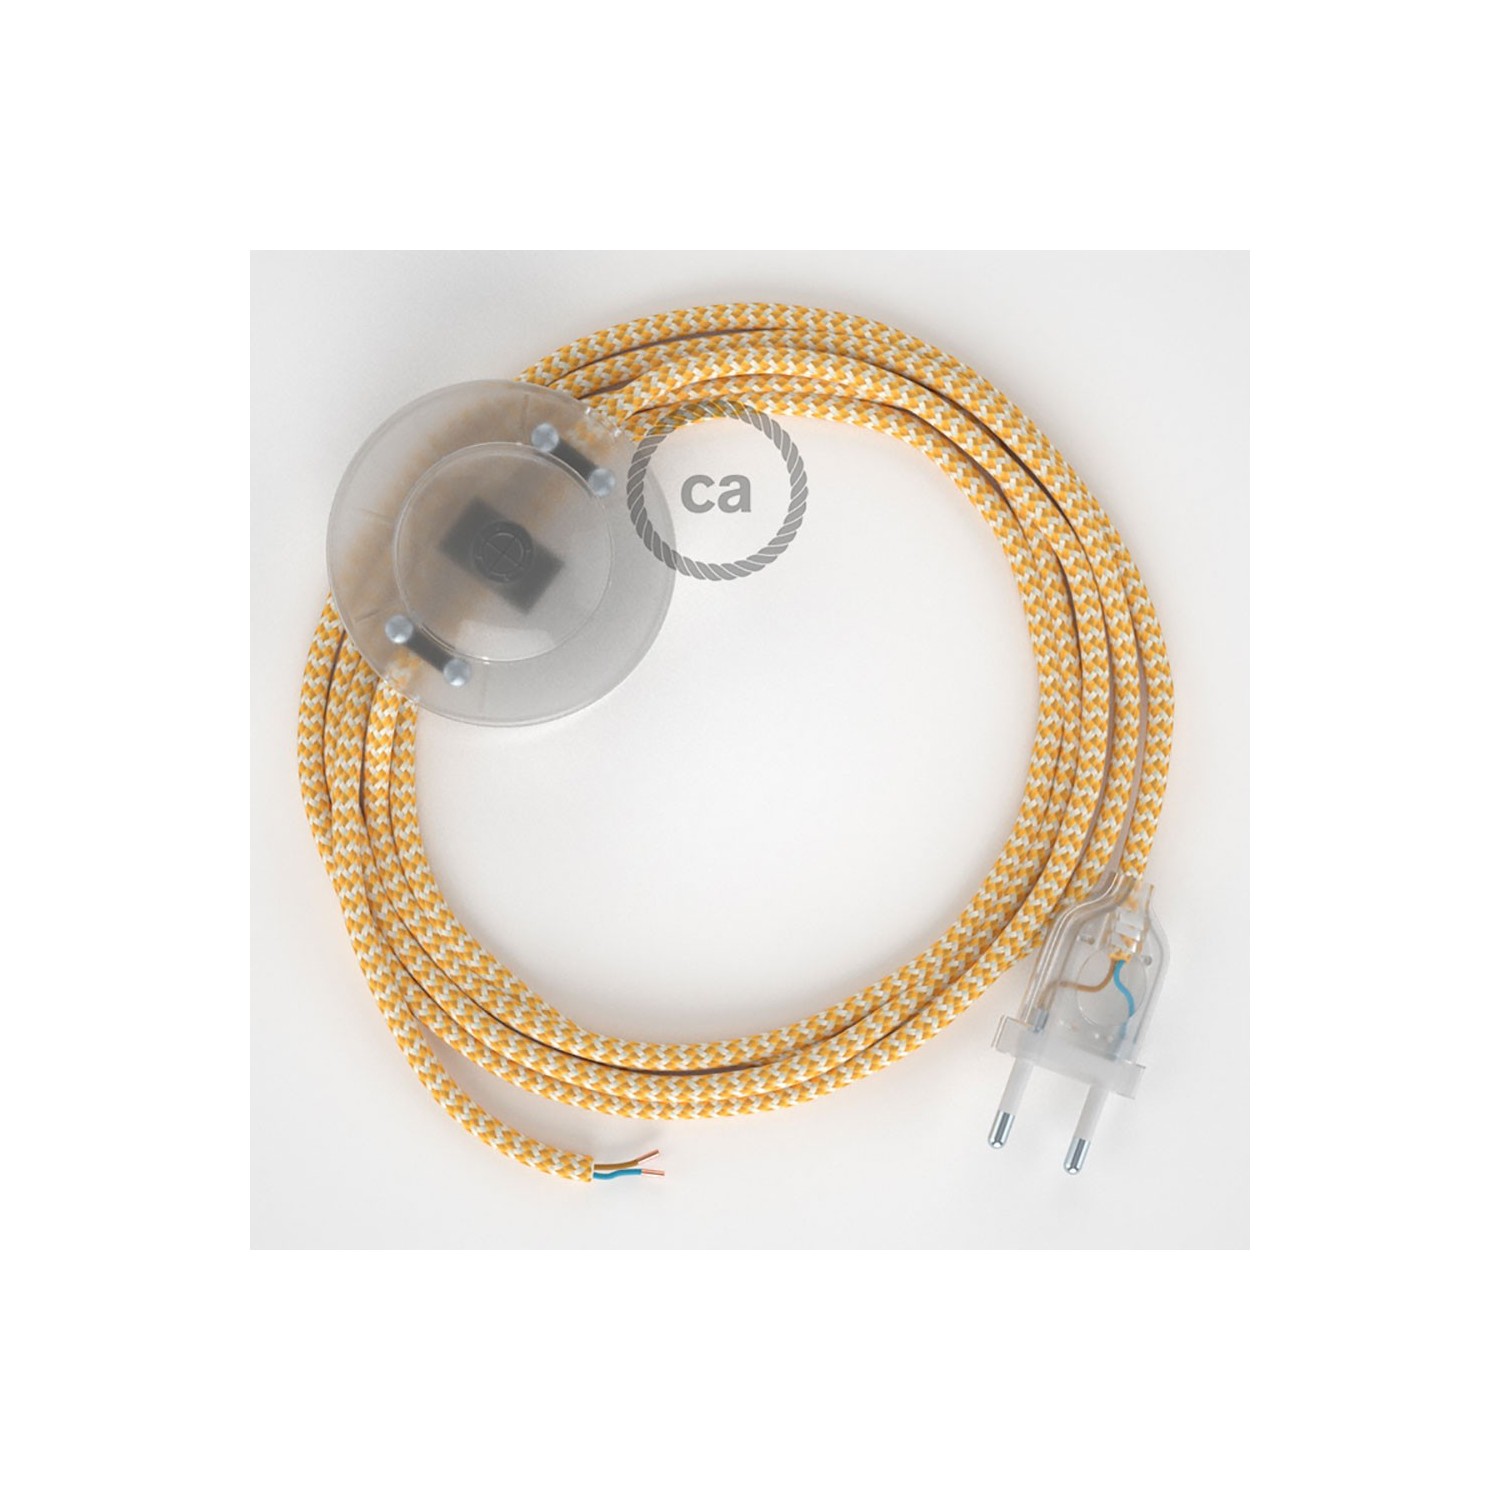 Υφασματινο Καλώδιο για Φωτιστικά Δαπέδου Zig Zag Άσπρο-Κίτρινο RZ10 - 3 m. Με διακόπτη ποδός και φις.